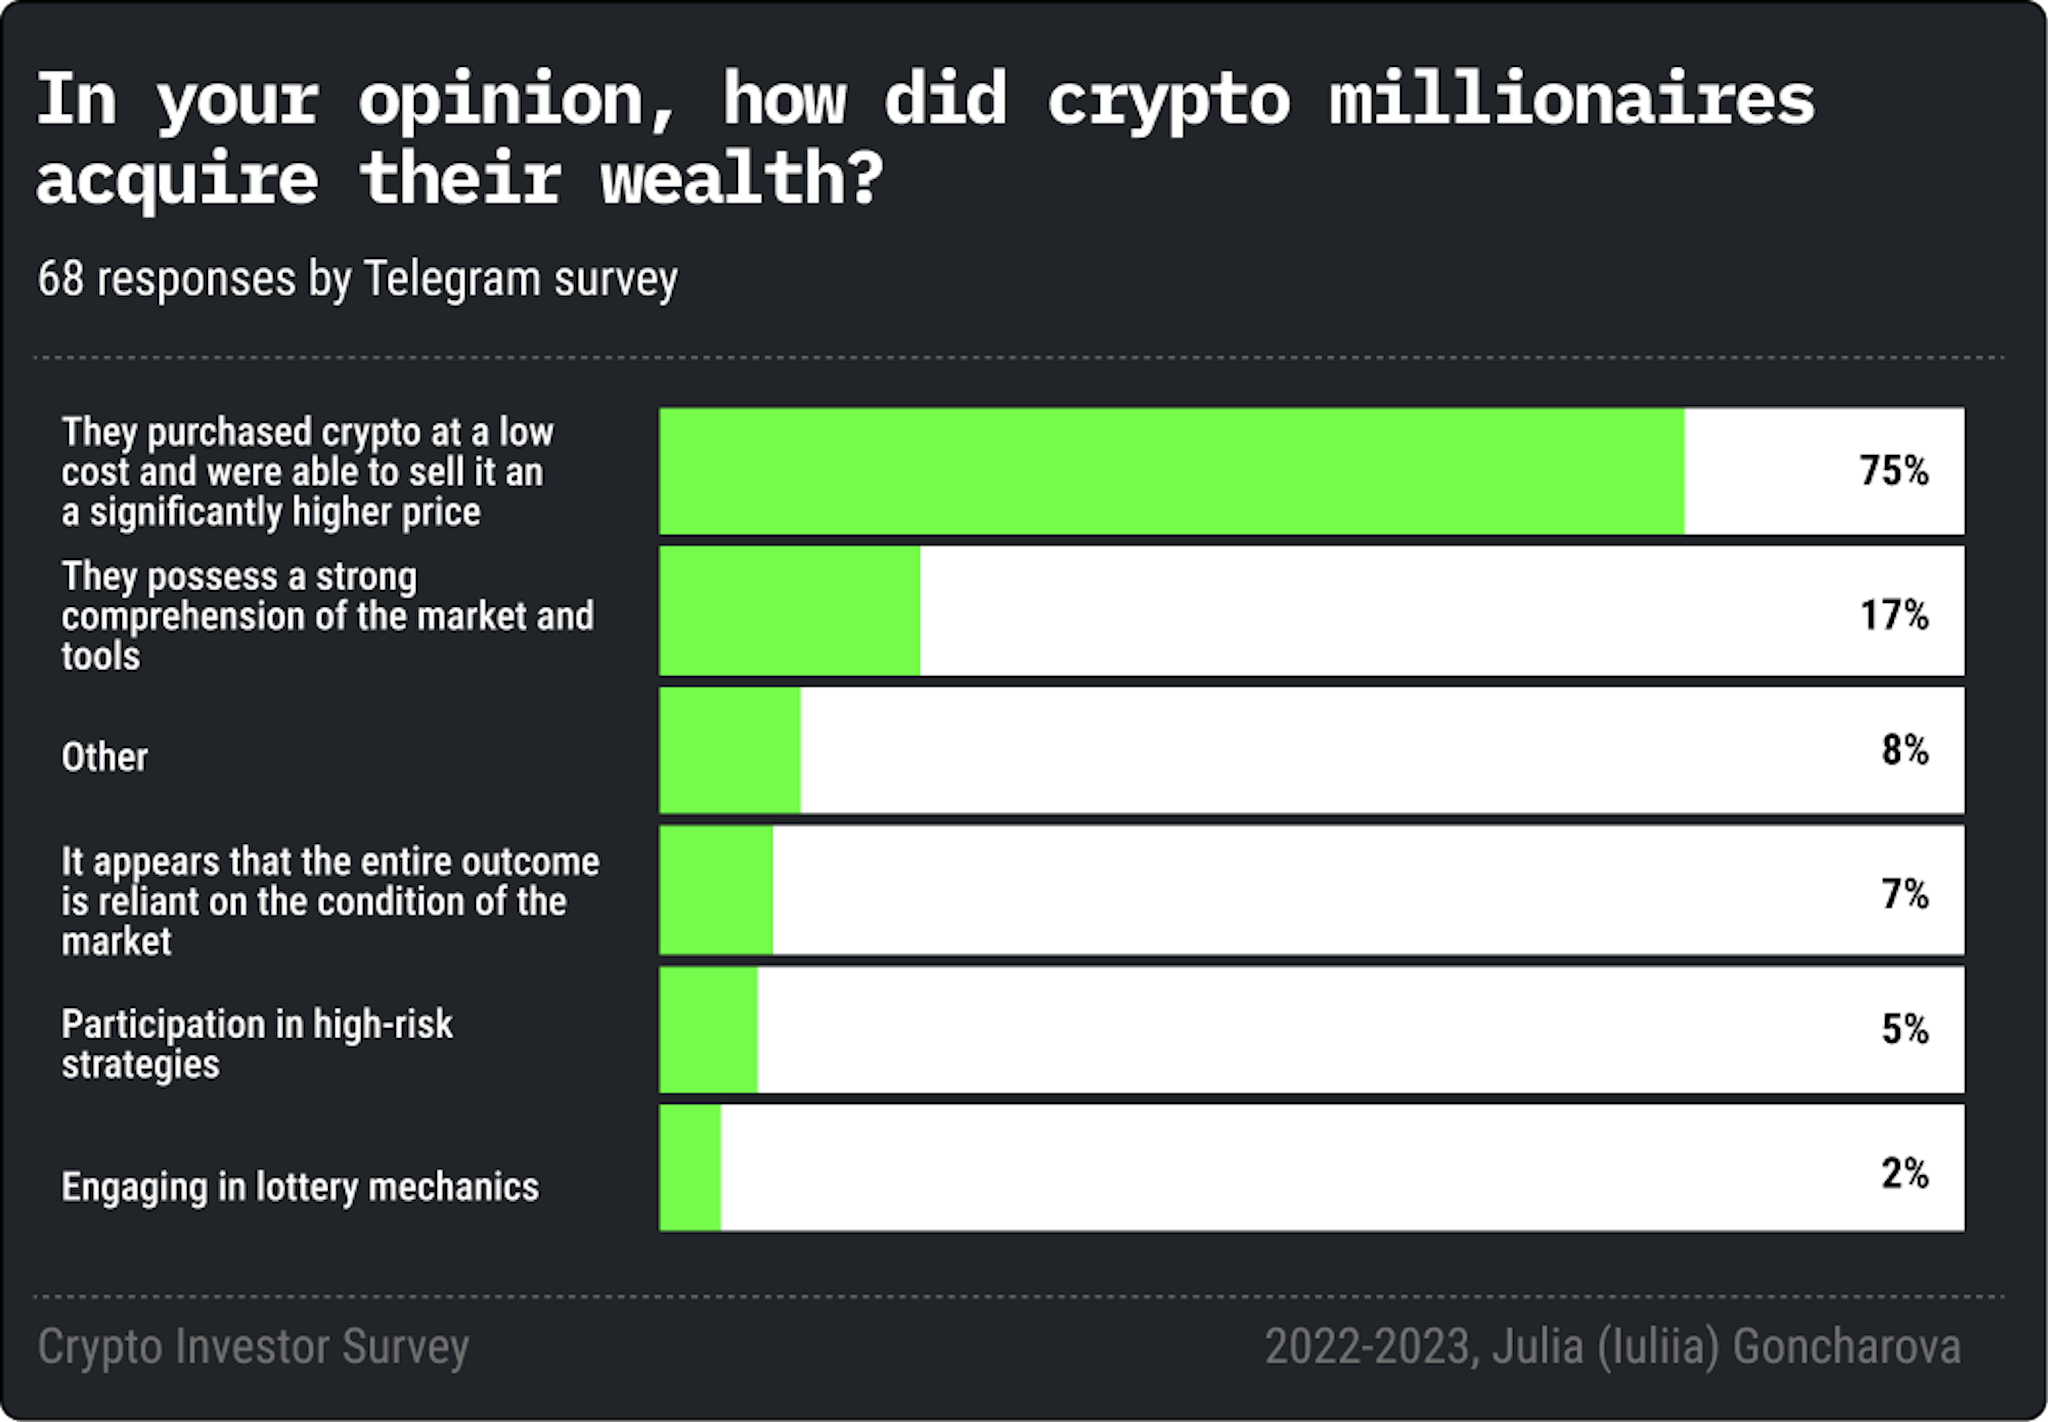 Crypto Investor Survey by Julia Goncharova, 2023